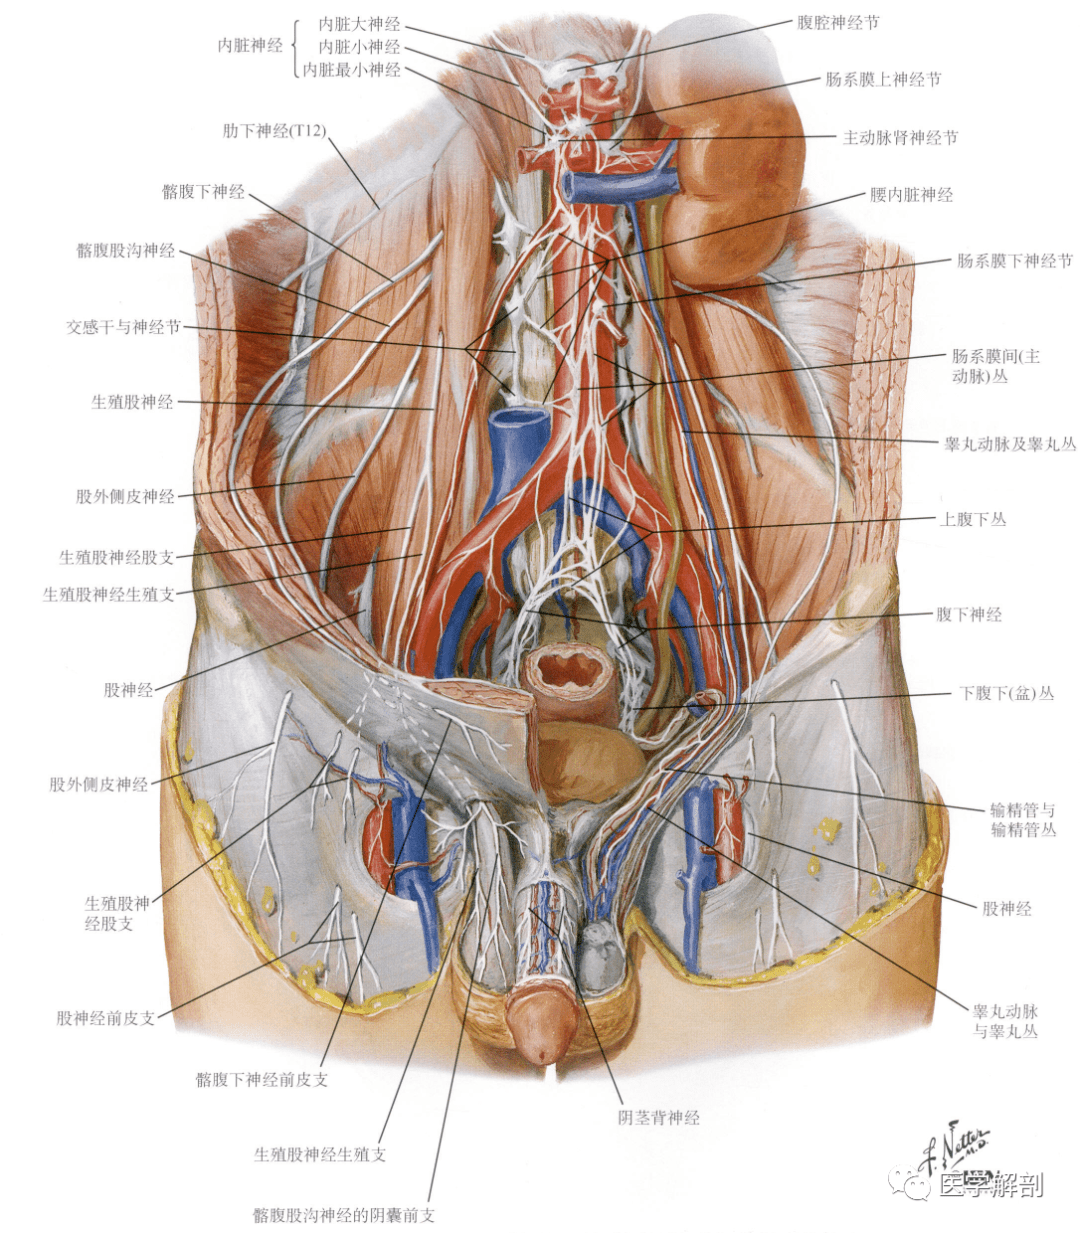 人体解剖学:男性生殖器 | 男性外生殖器(二)